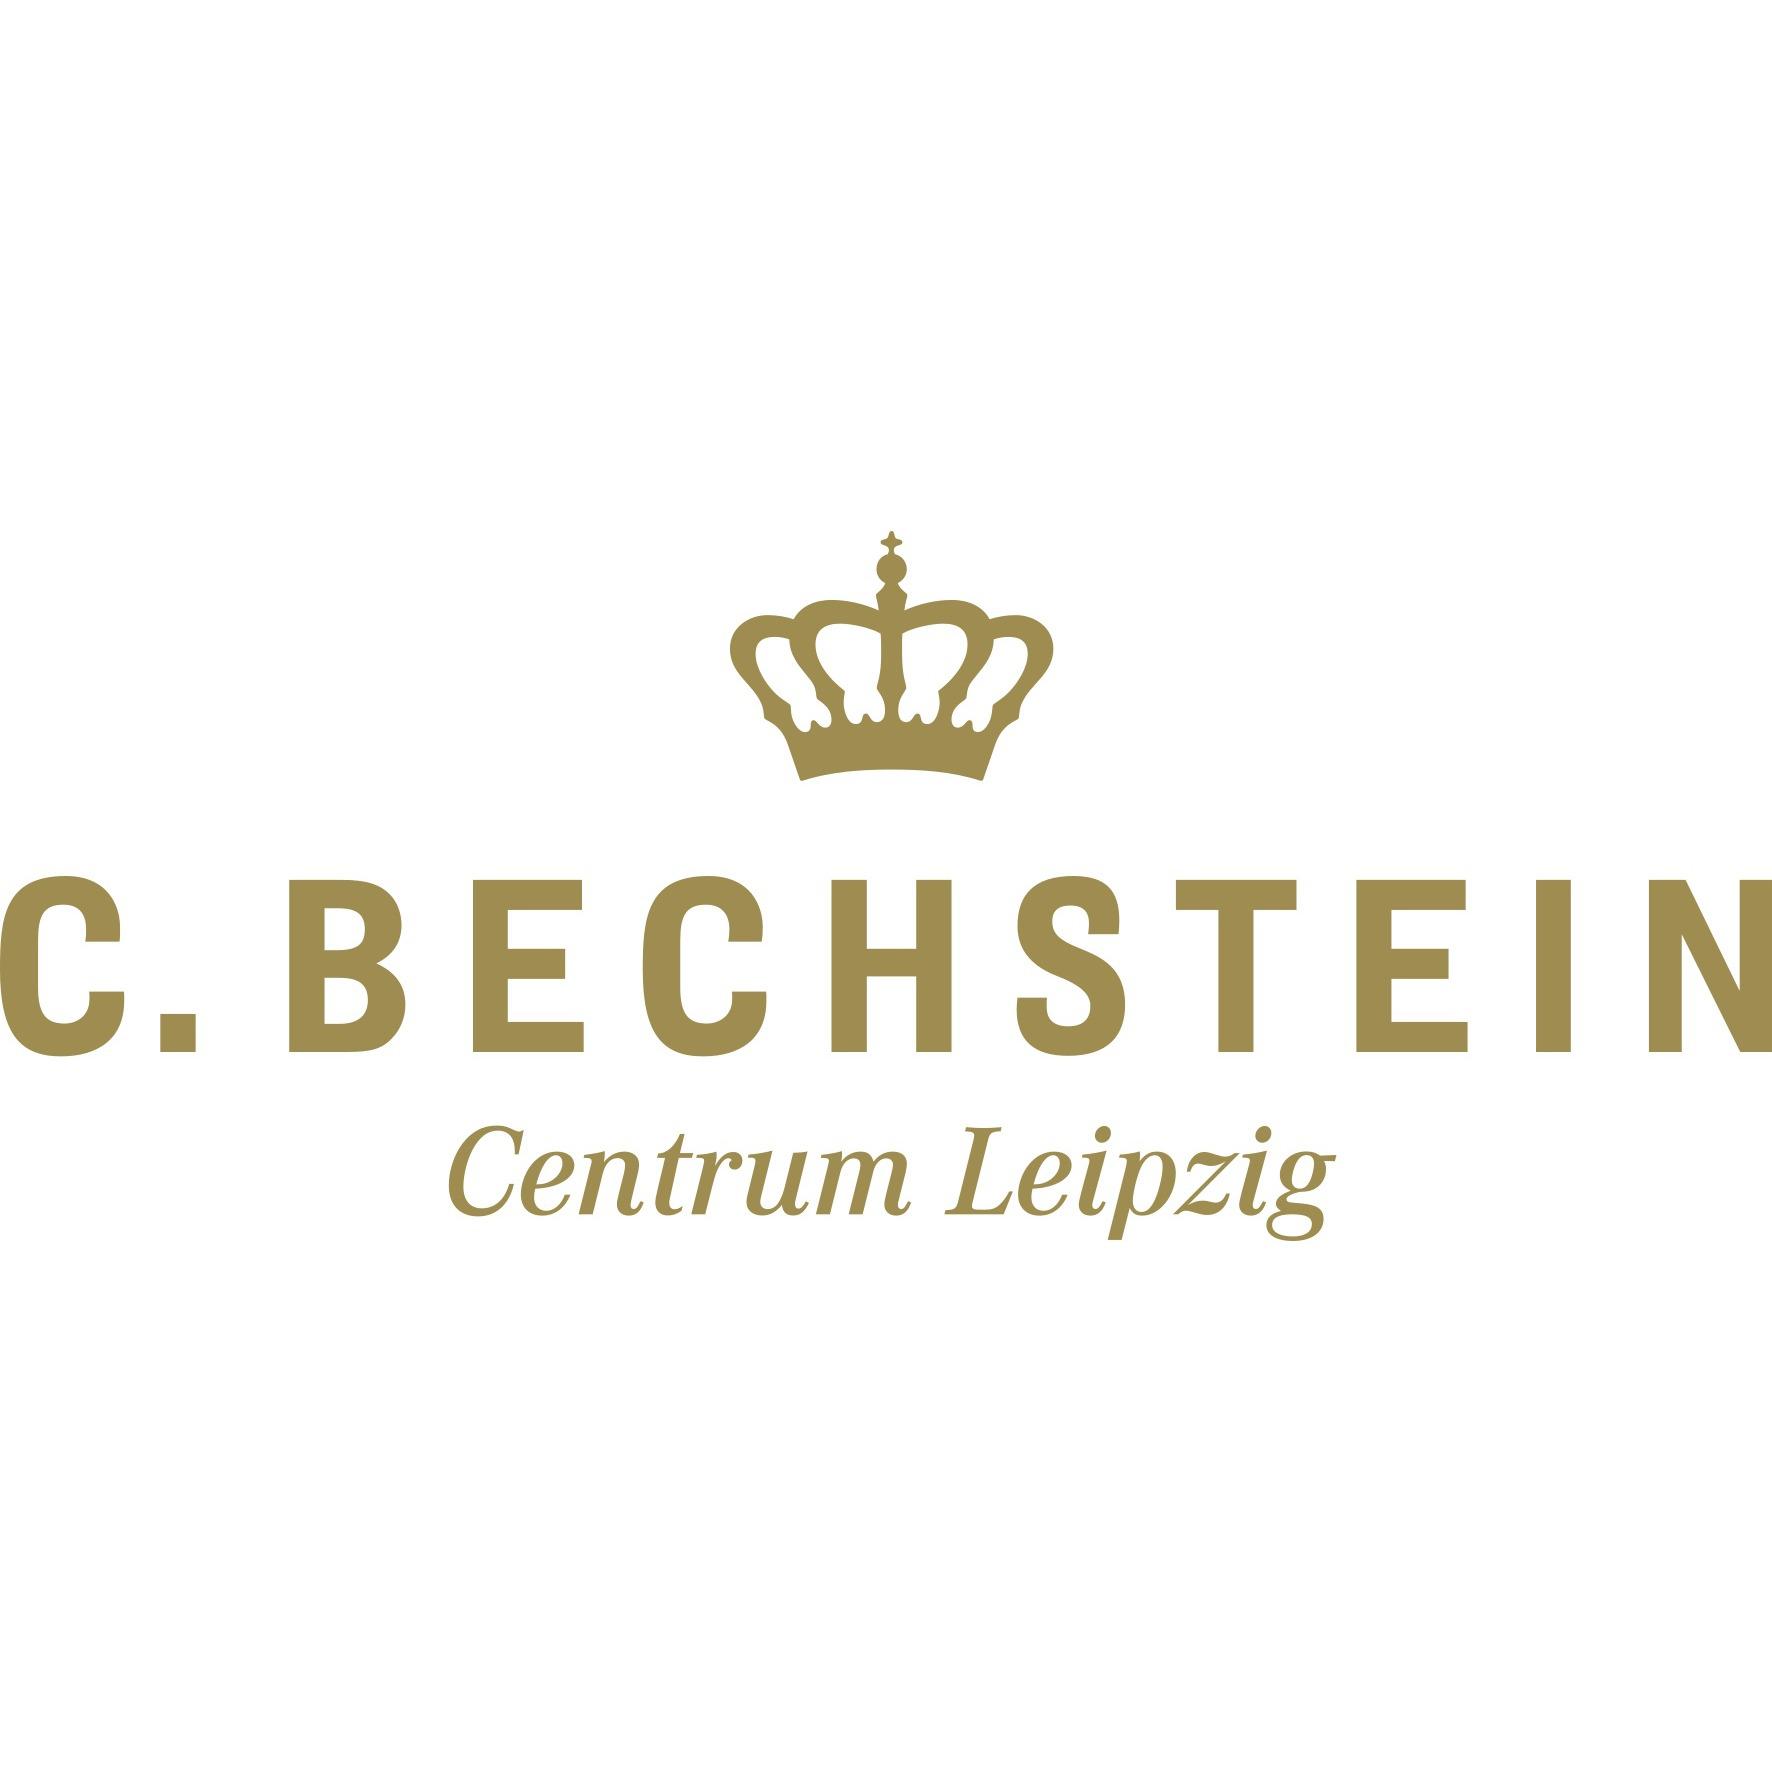 C. Bechstein Centrum Leipzig GmbH  